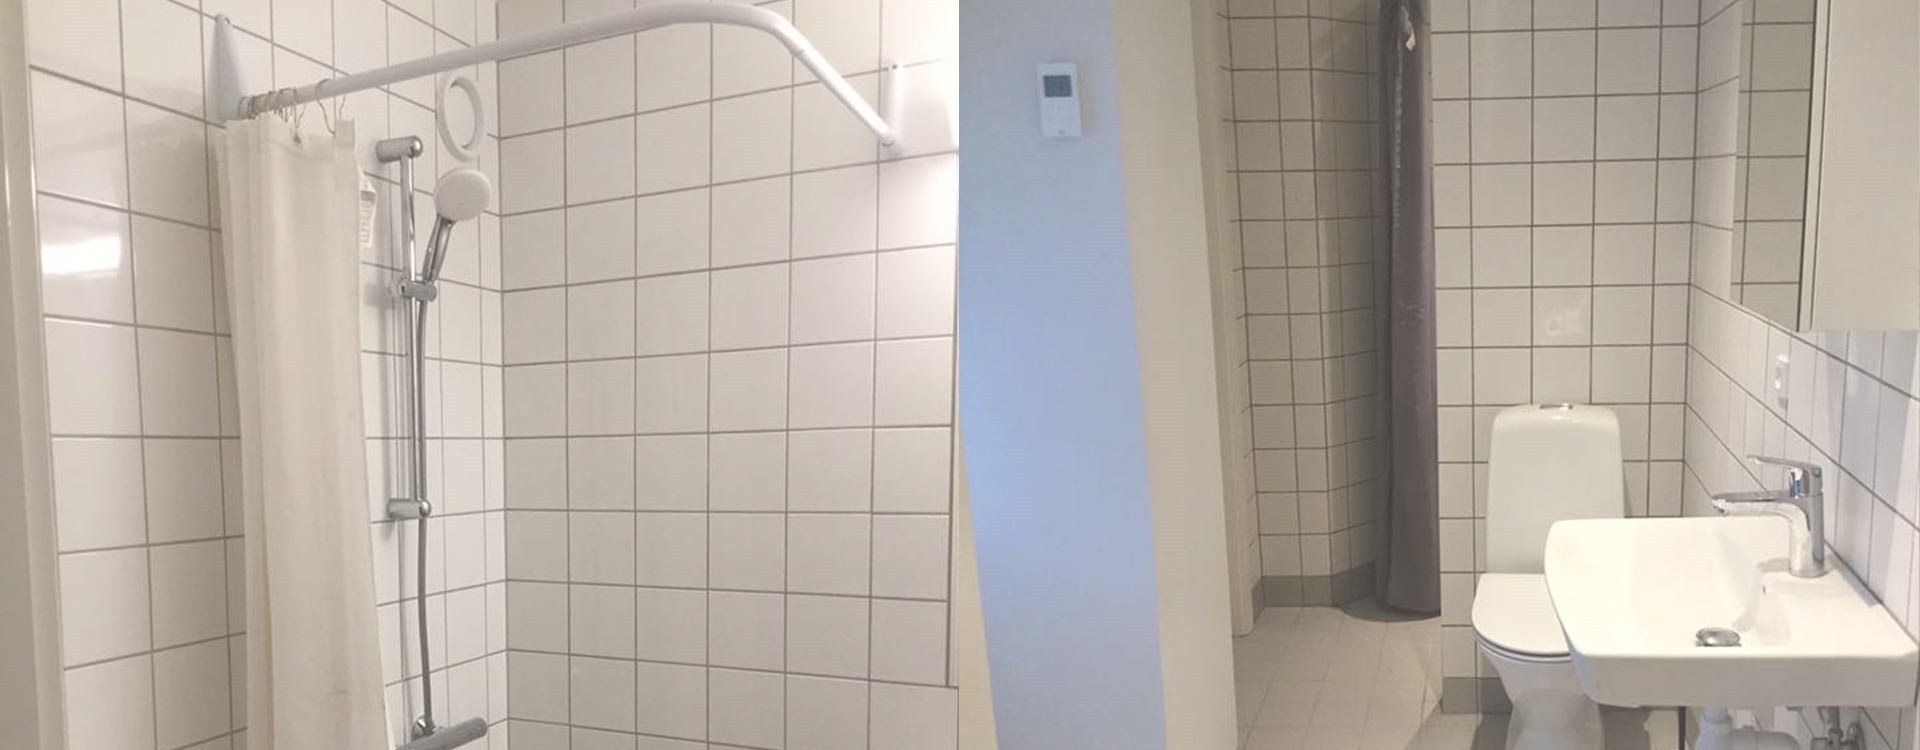 Renovering af badeværelse i København, Amager og Frederiksberg. 